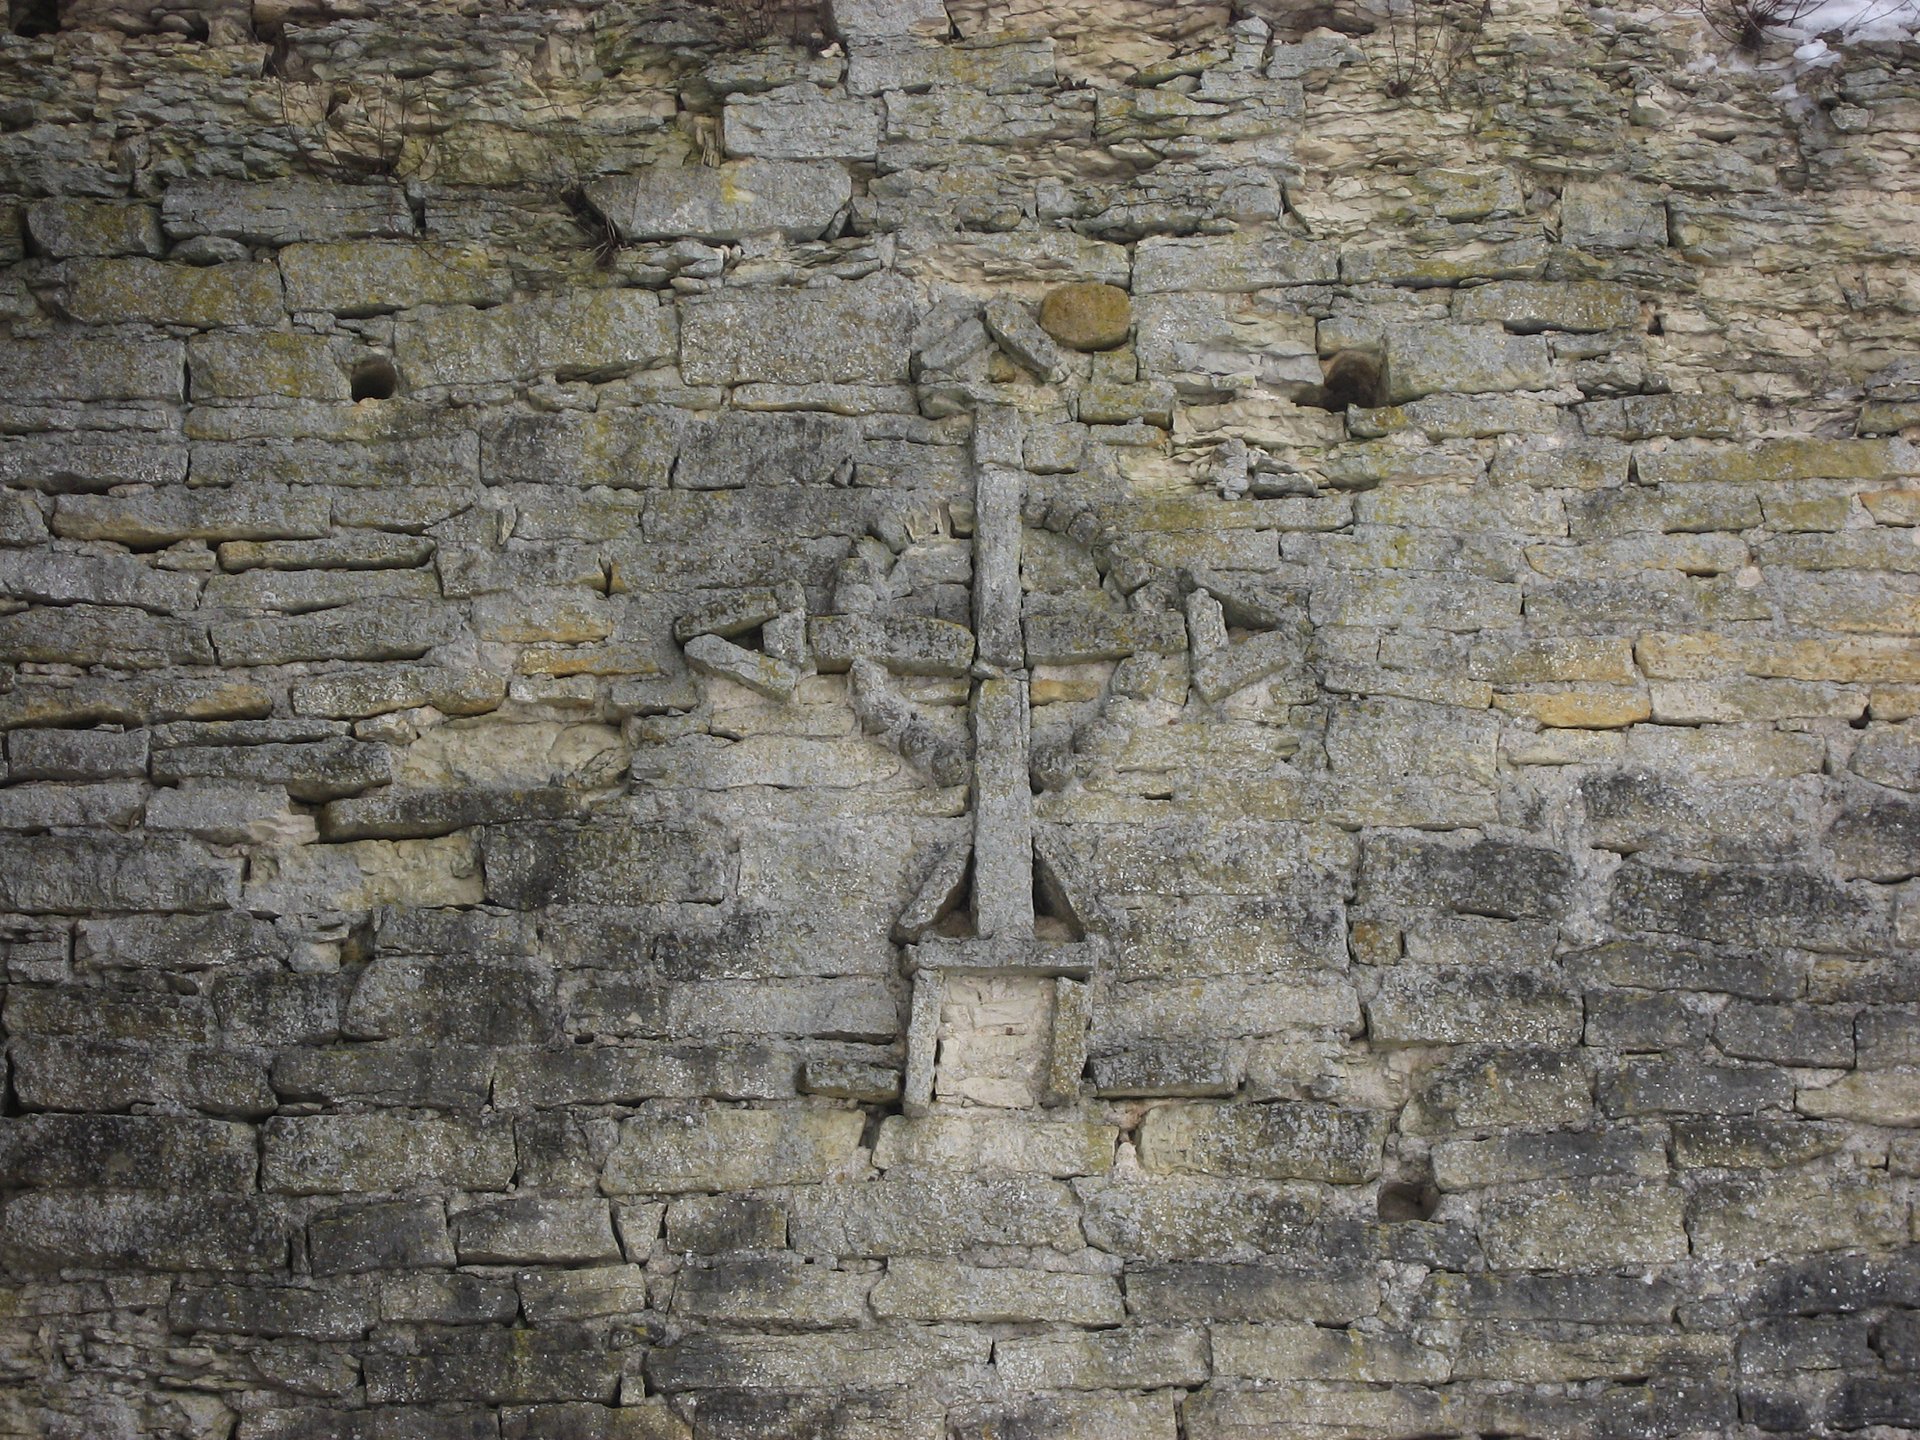 Крест на стене Изборской крепости